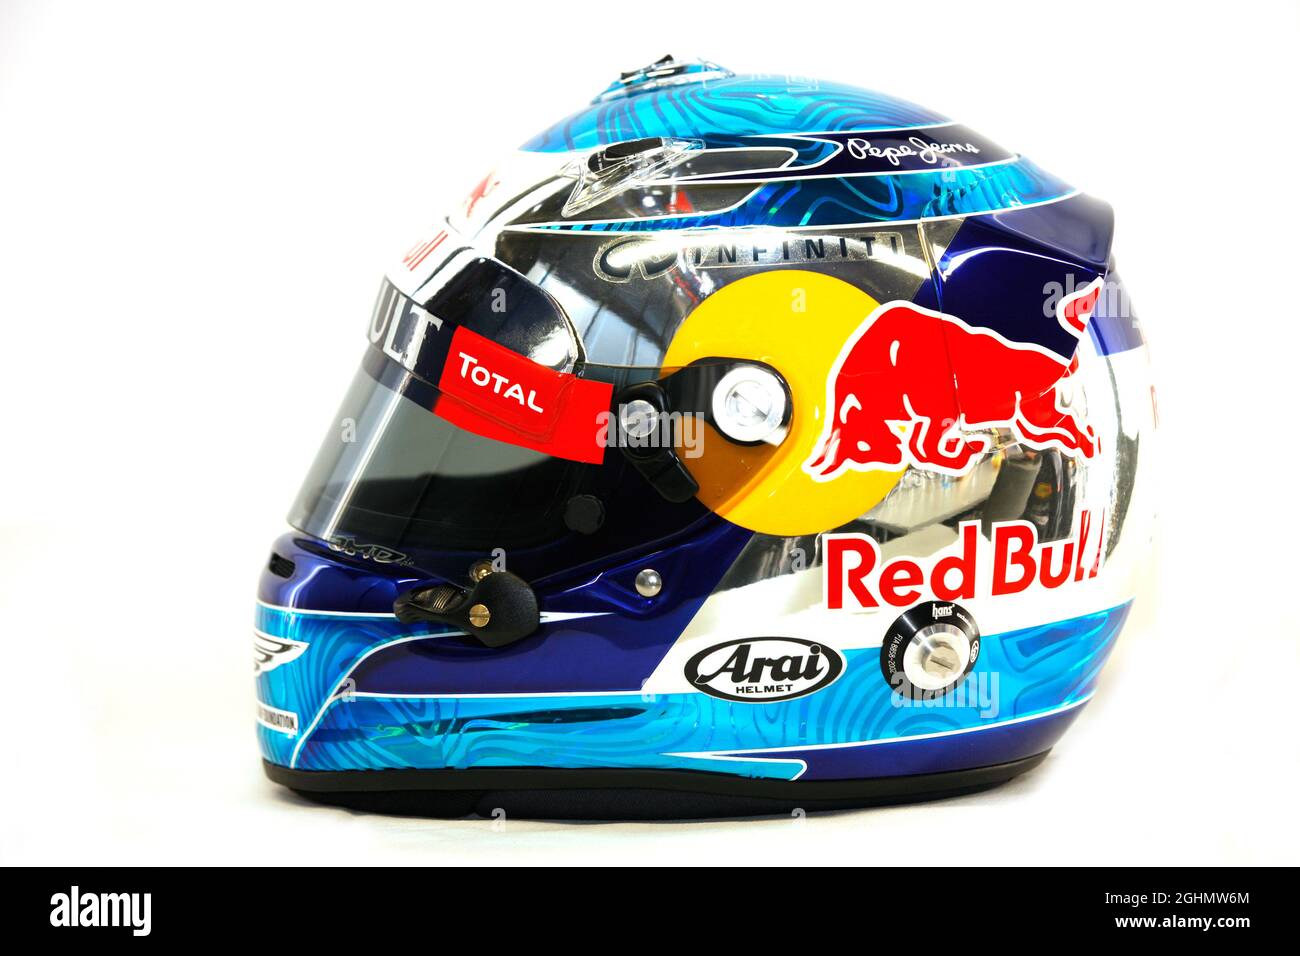 Le casque de Sebastian Vettel (GER) Red Bull Racing. Test de Formule 1,  jour 1, mardi 28 janvier 2014. Jerez, Espagne Photo Stock - Alamy